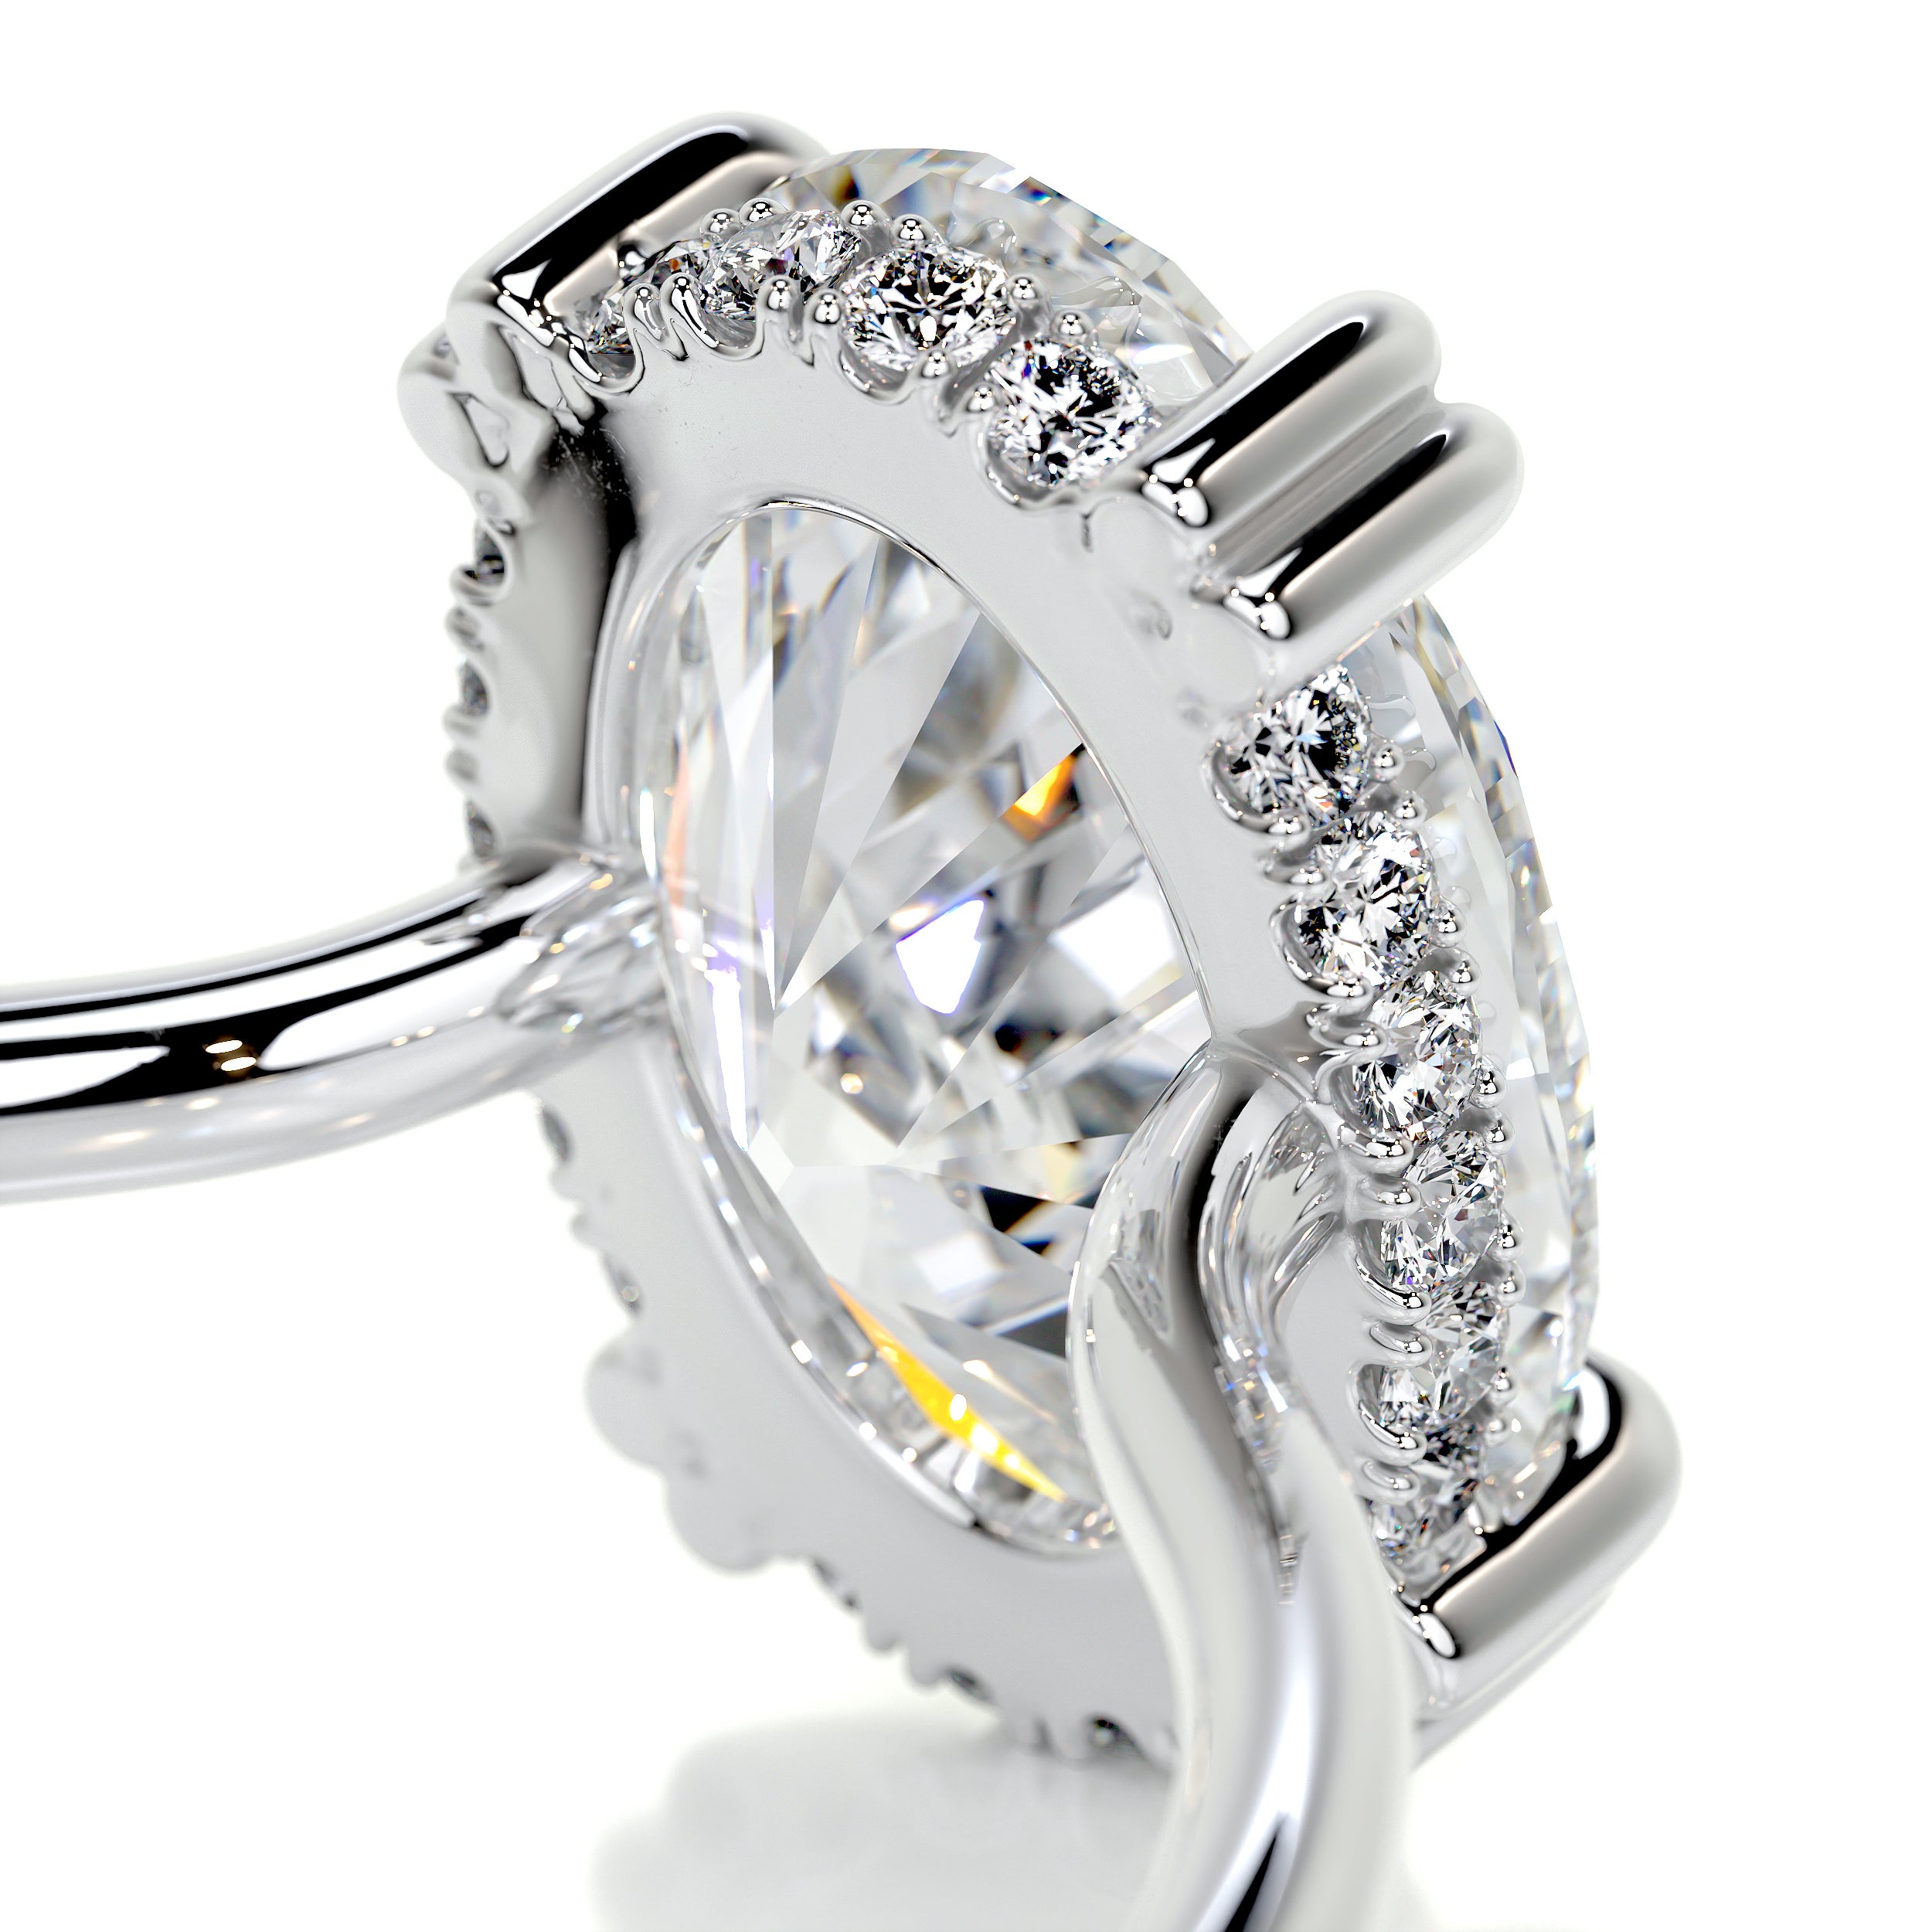 Harriet Diamond Engagement Ring   (3.1 Carat) -Platinum